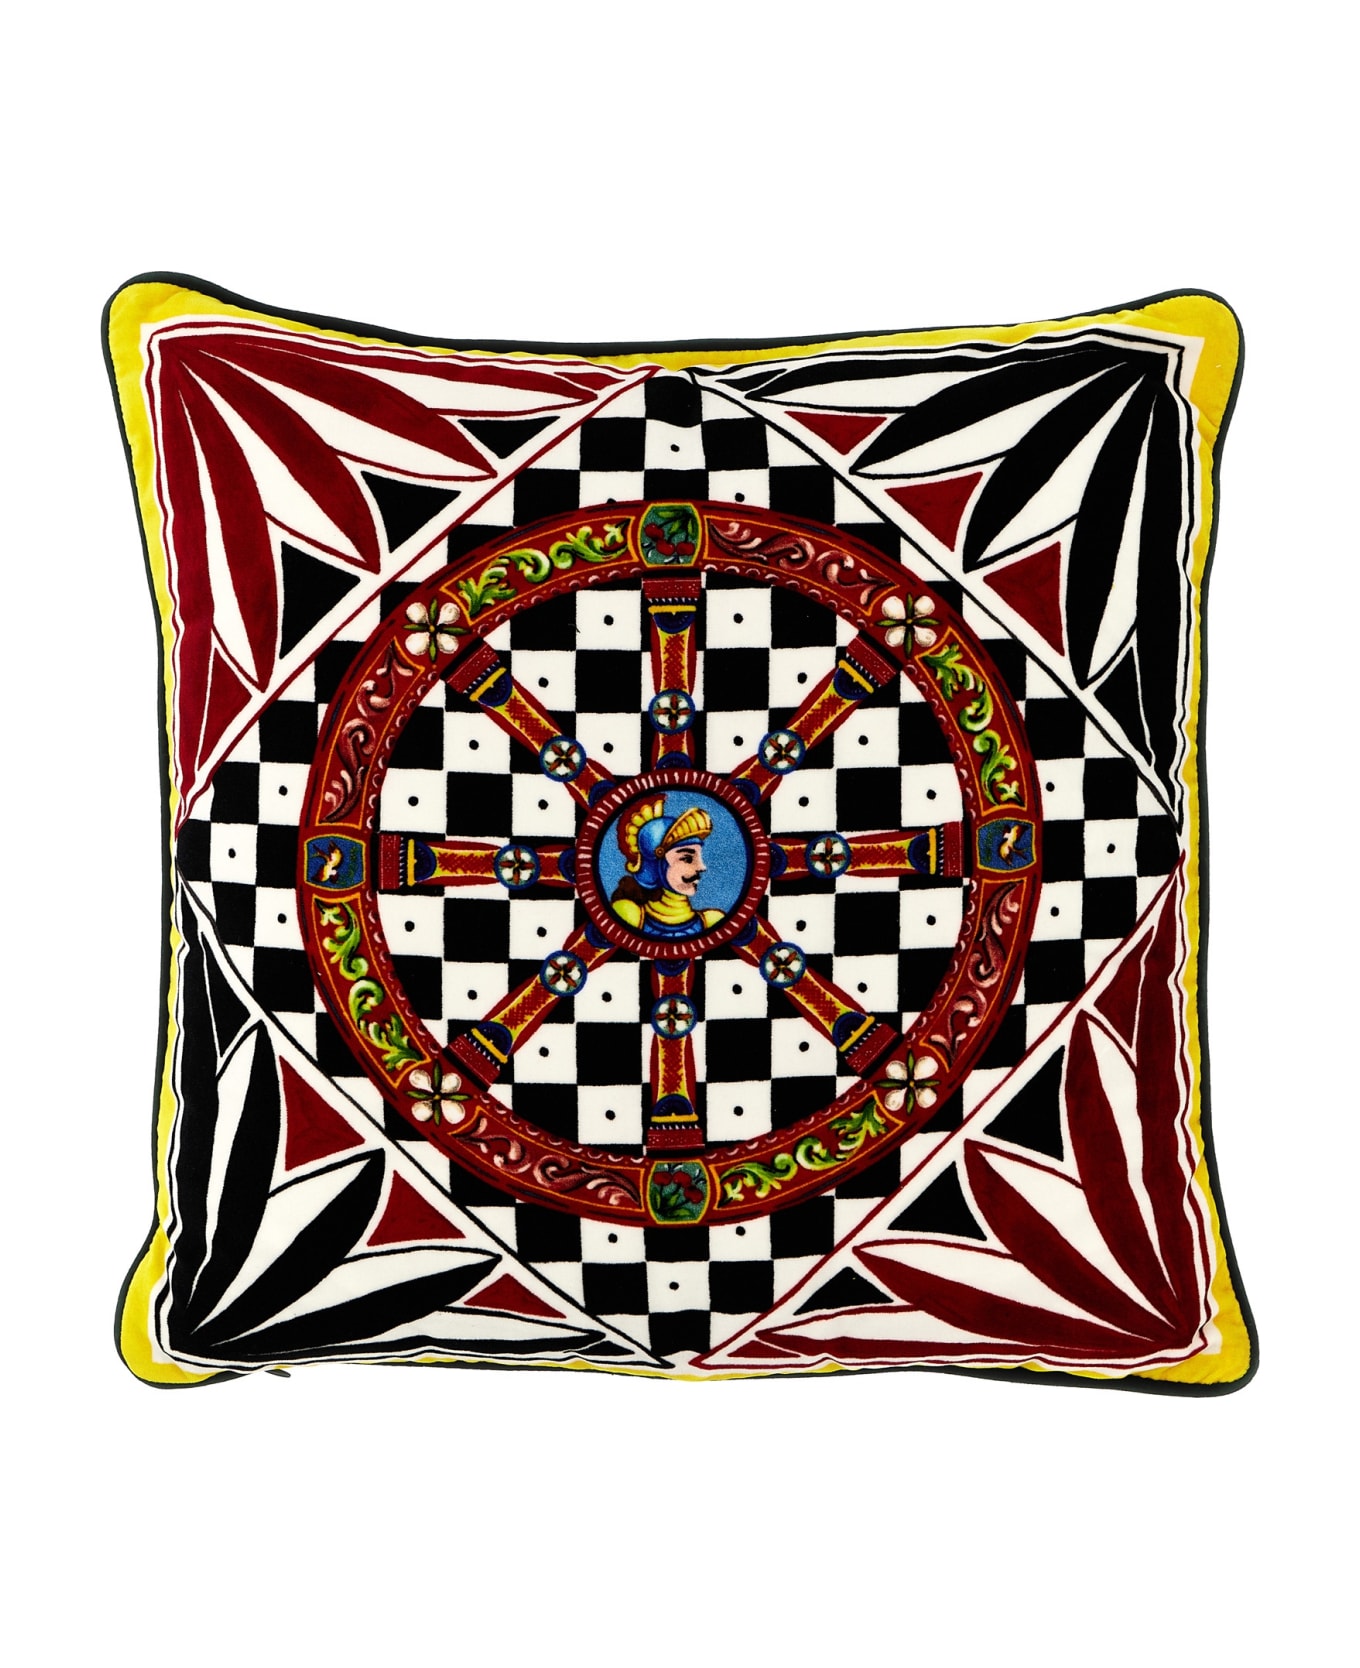 Dolce & Gabbana 'carretto Siciliano' Small Cushion - Multicolor